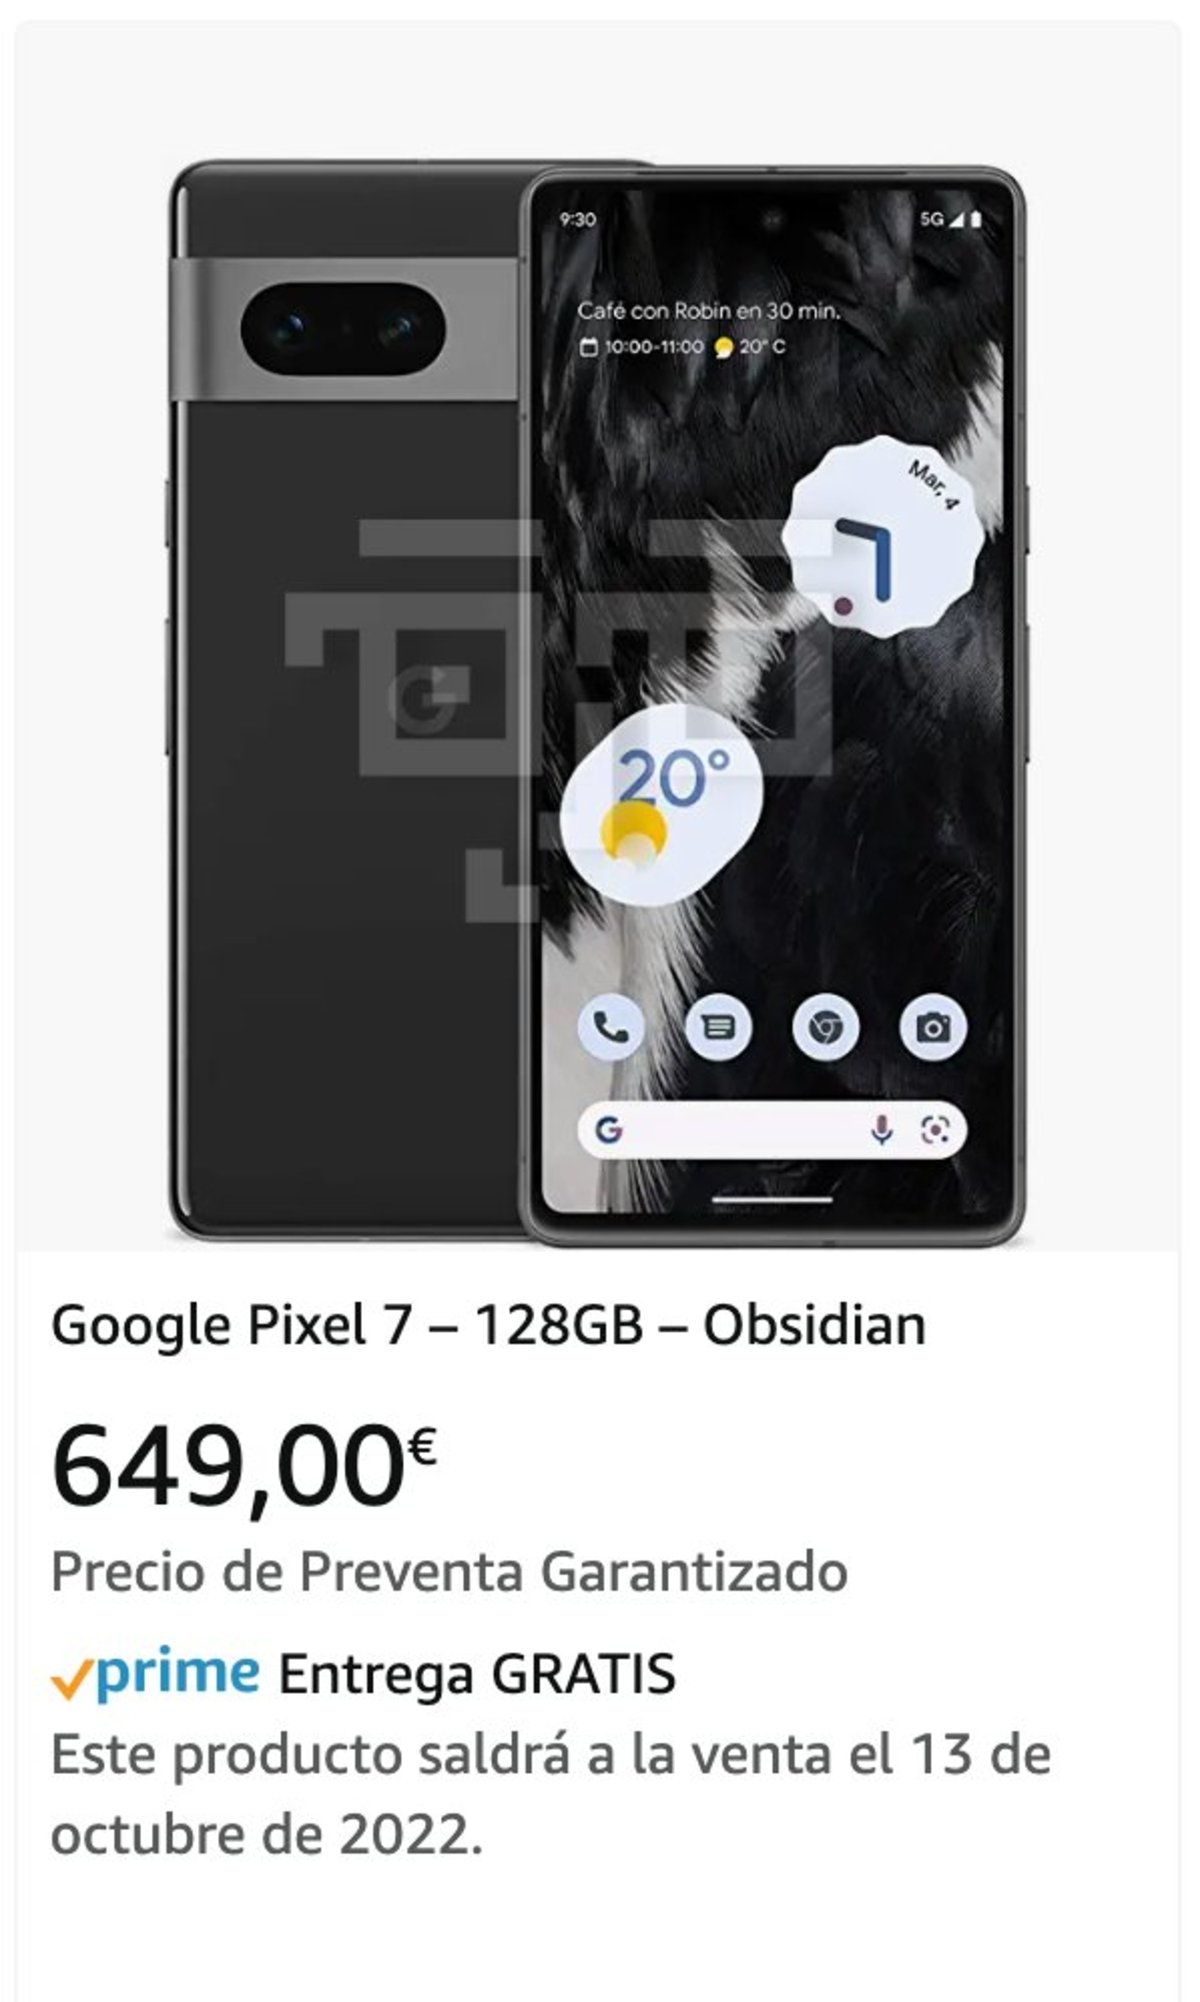 Precio del Google Pixel 7 en Amazon España.